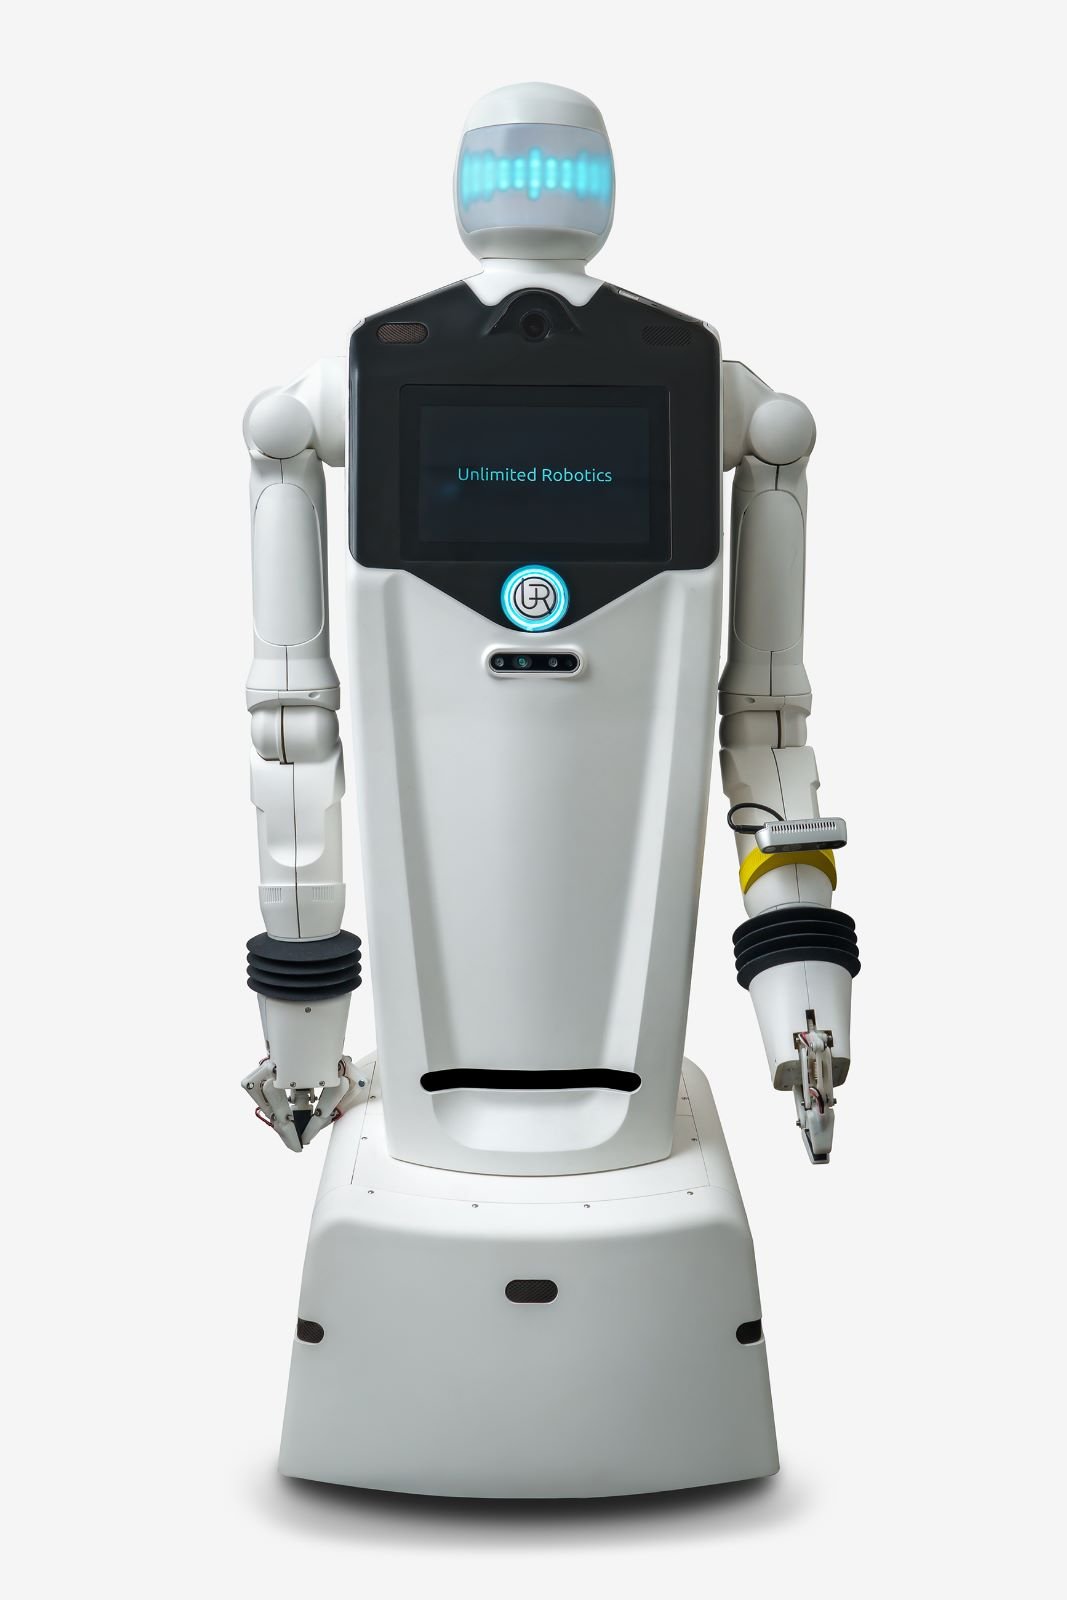 גרי, רובוט חכם כחול-לבן מתוצרת unlimited robotics, כבר משתלב בתעשייה המסורתית, כמו גם בבתי חולים, בסיעוד, בבתי מלון ובמסעדות